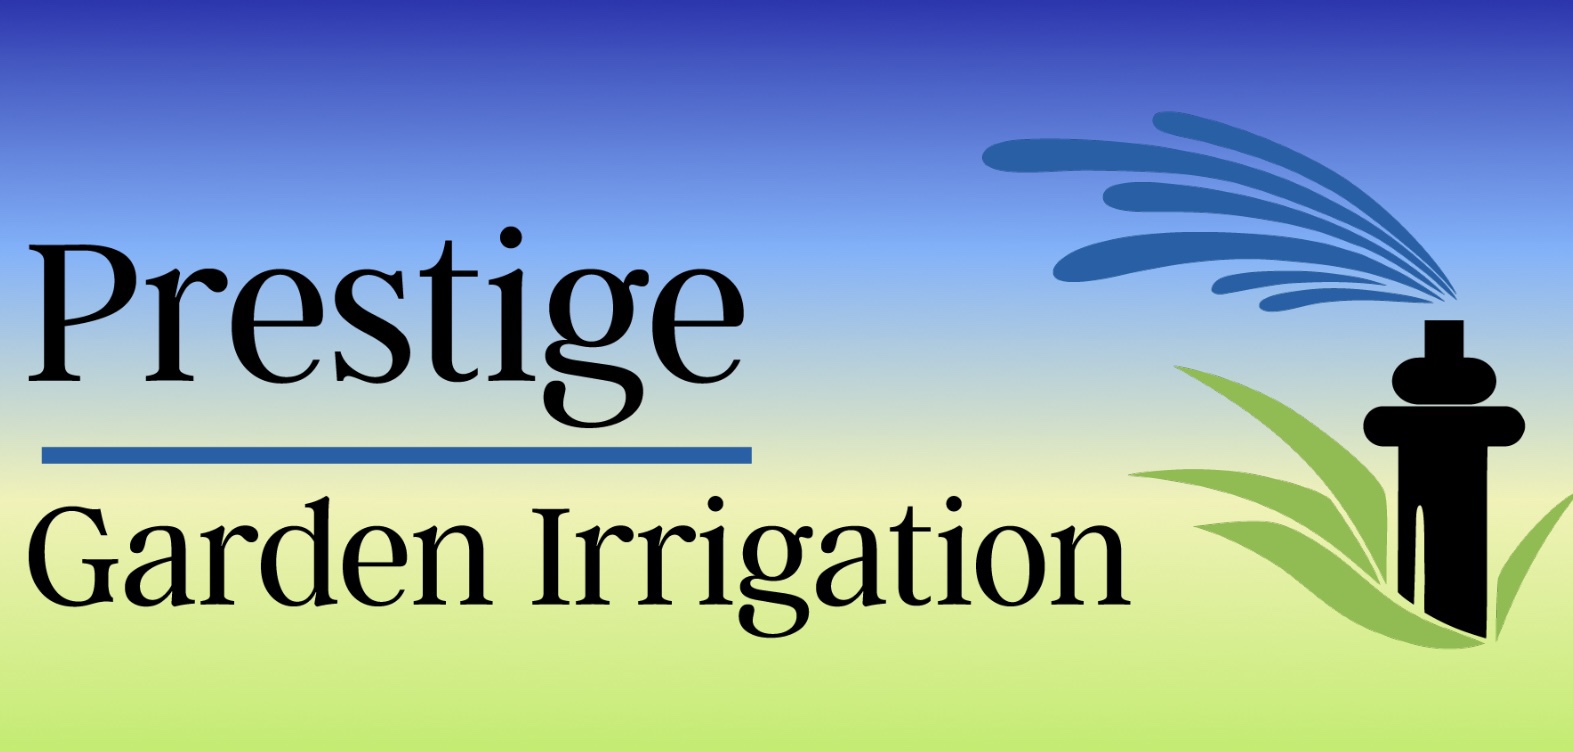 Prestige Garden Irrigation Ltd.'s logo